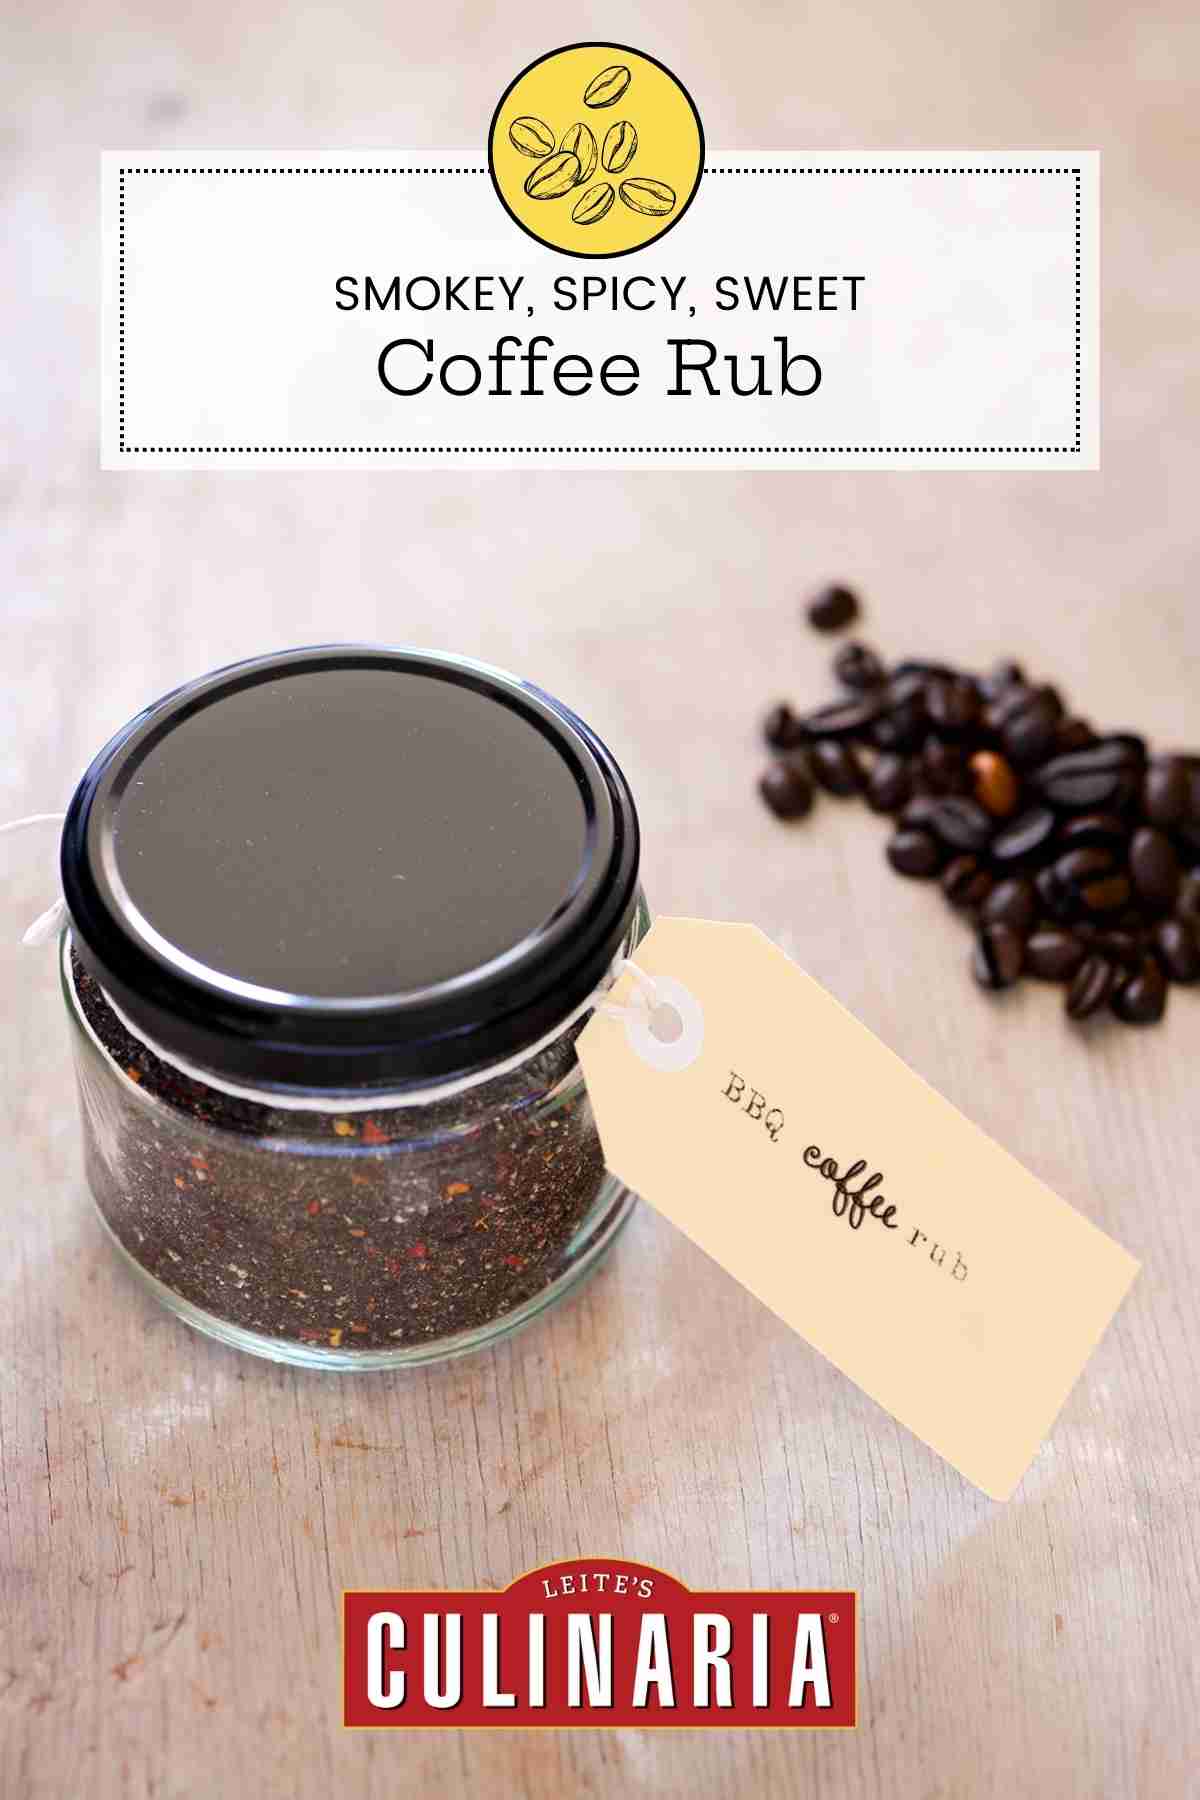 A jar of coffee rub with a manila gift tag.